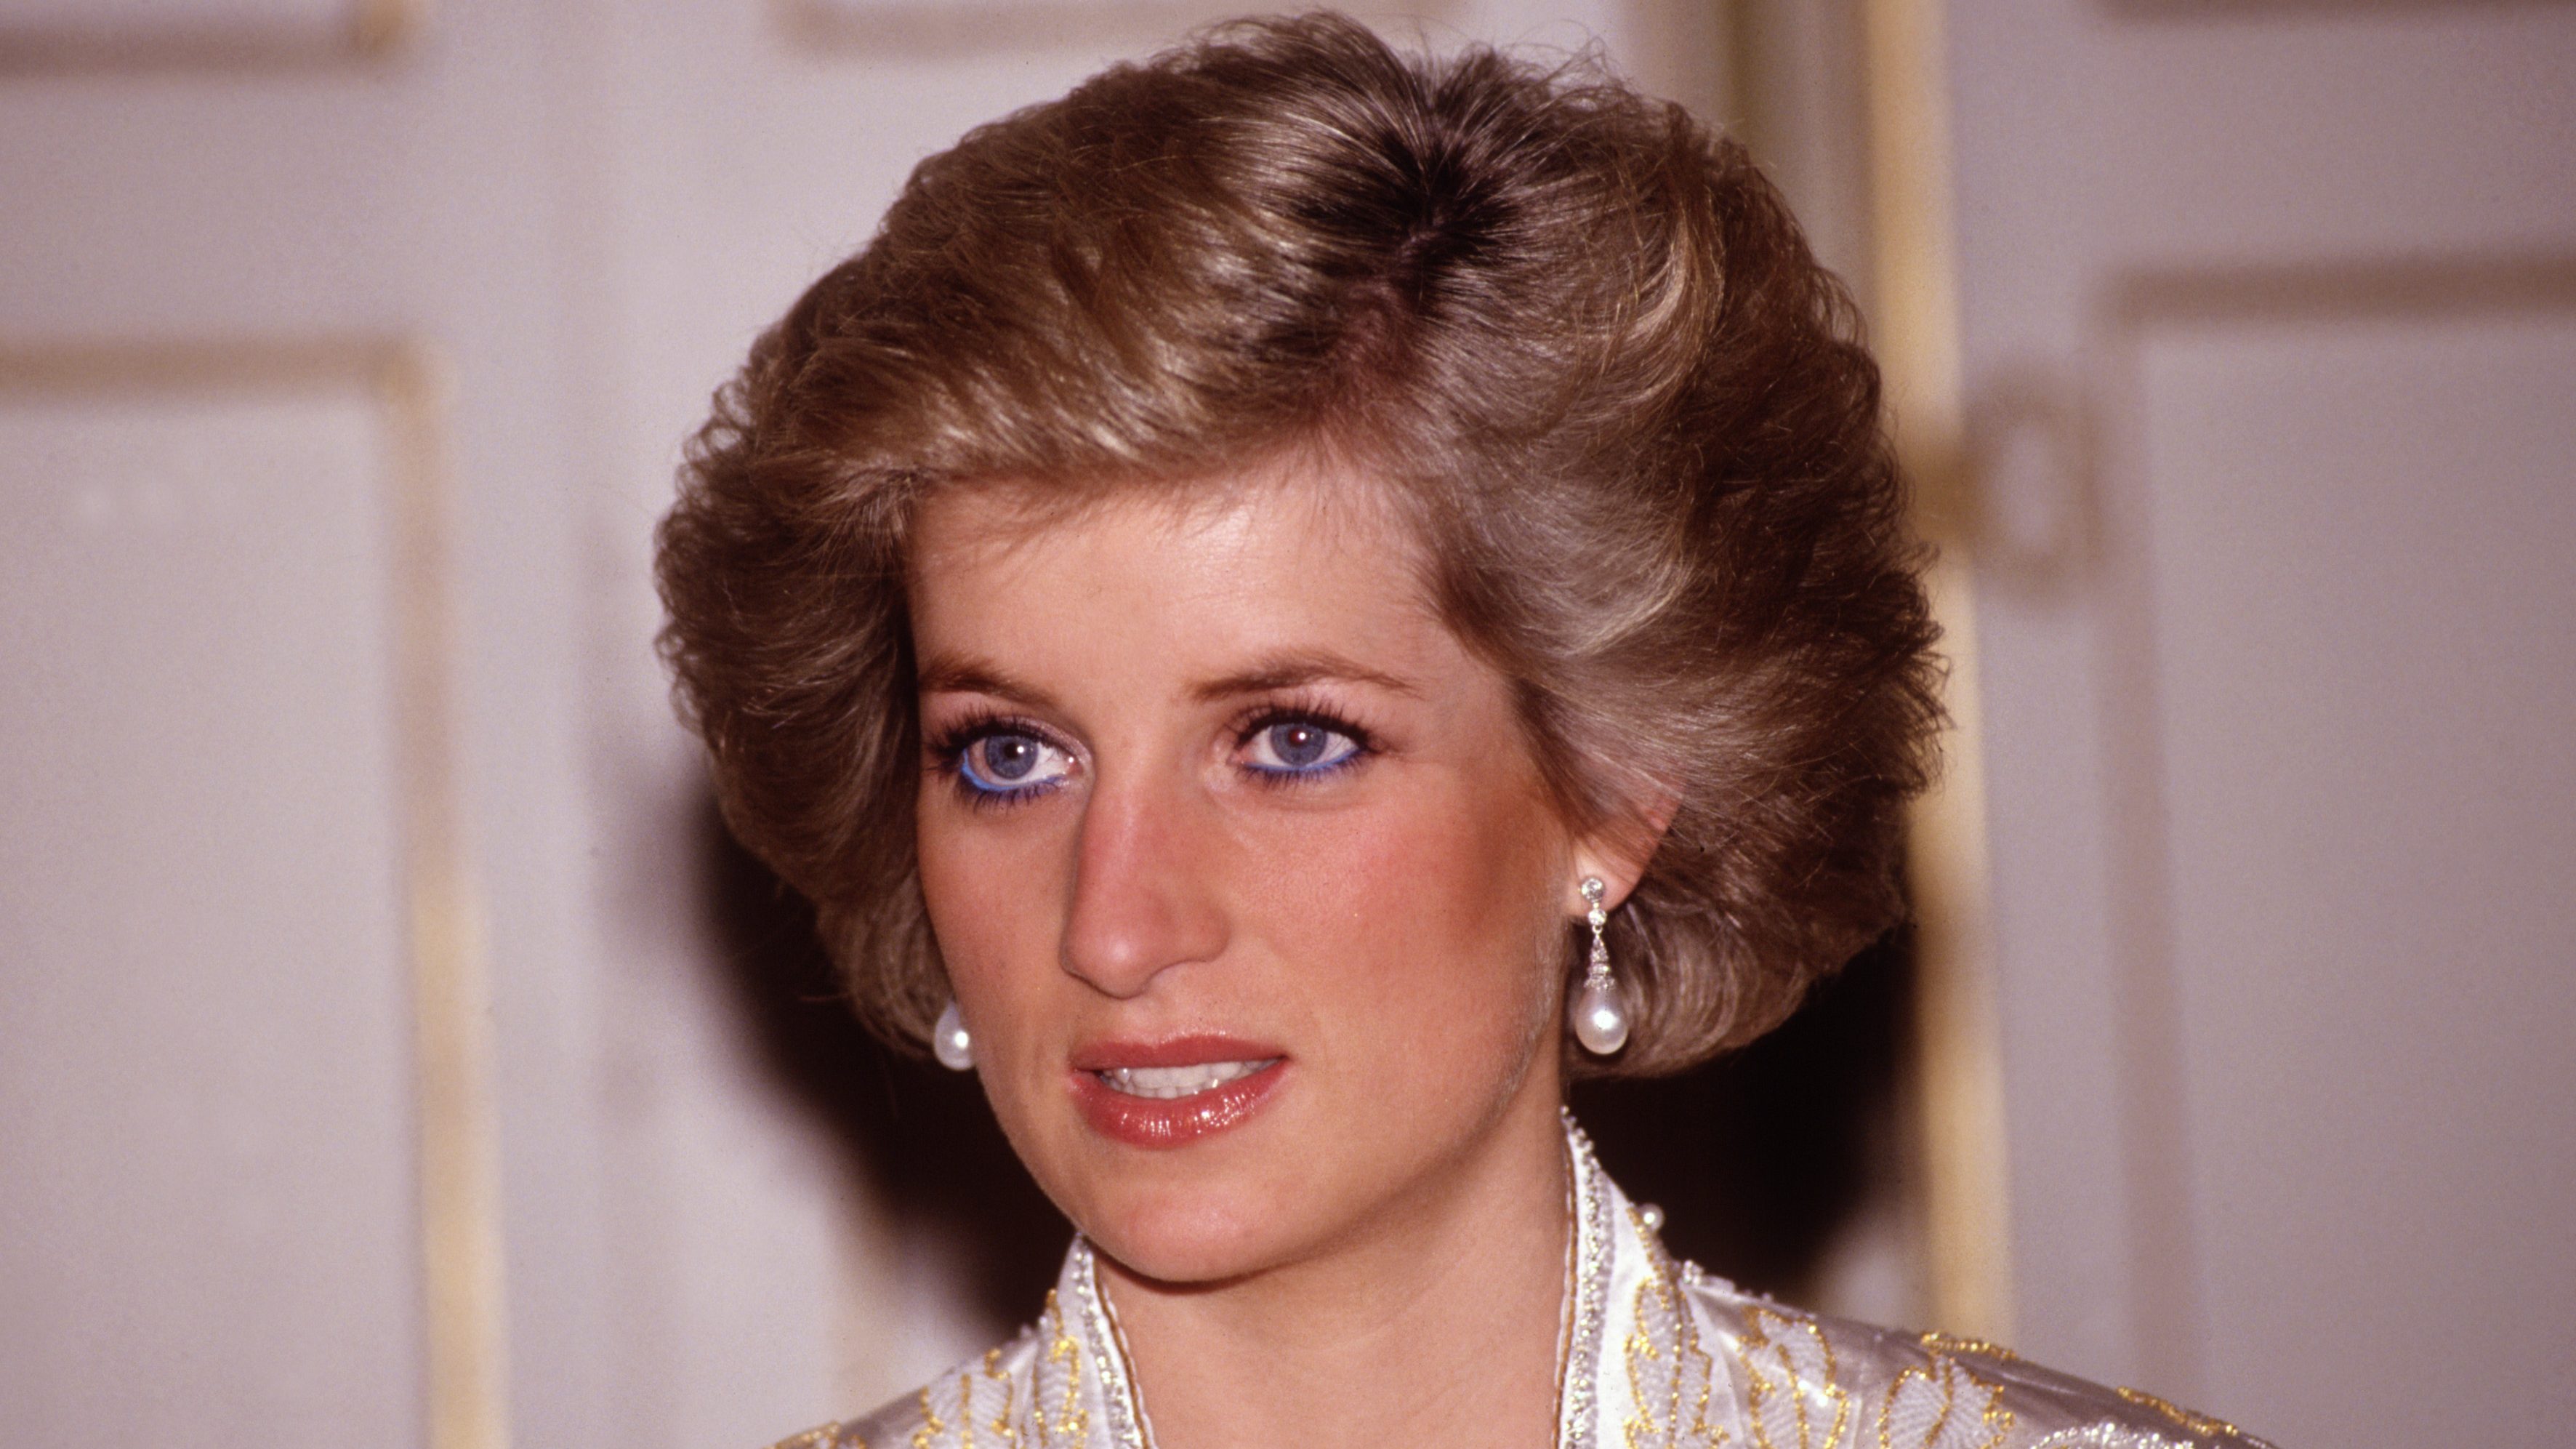 Diana hercegné a címlapkirálynő a királyi családban